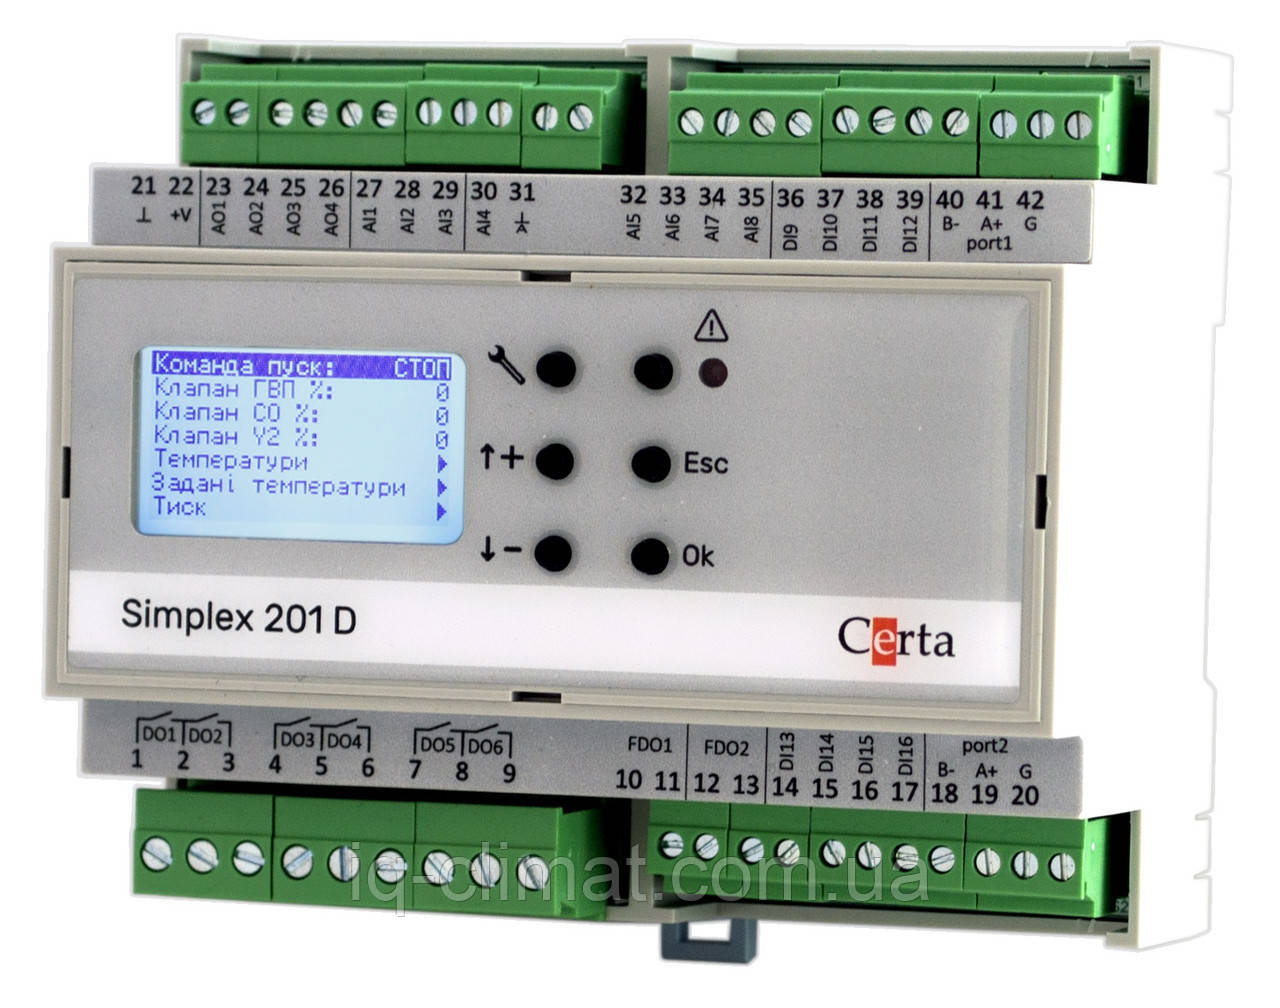 Simplex 201D вільно програмований контролер з дисплеєм, Certa (Церта)